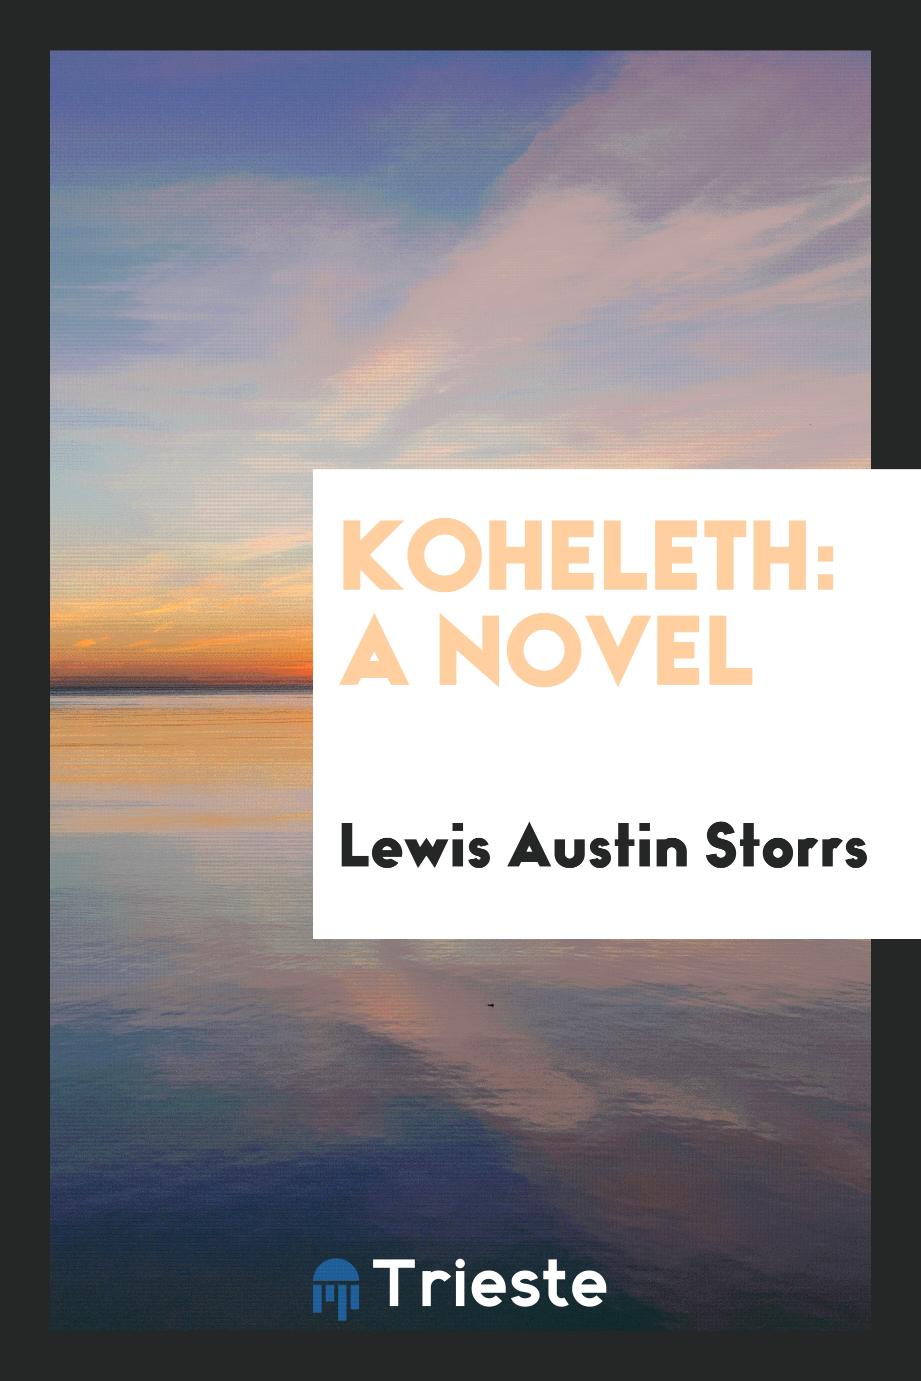 Koheleth: A Novel